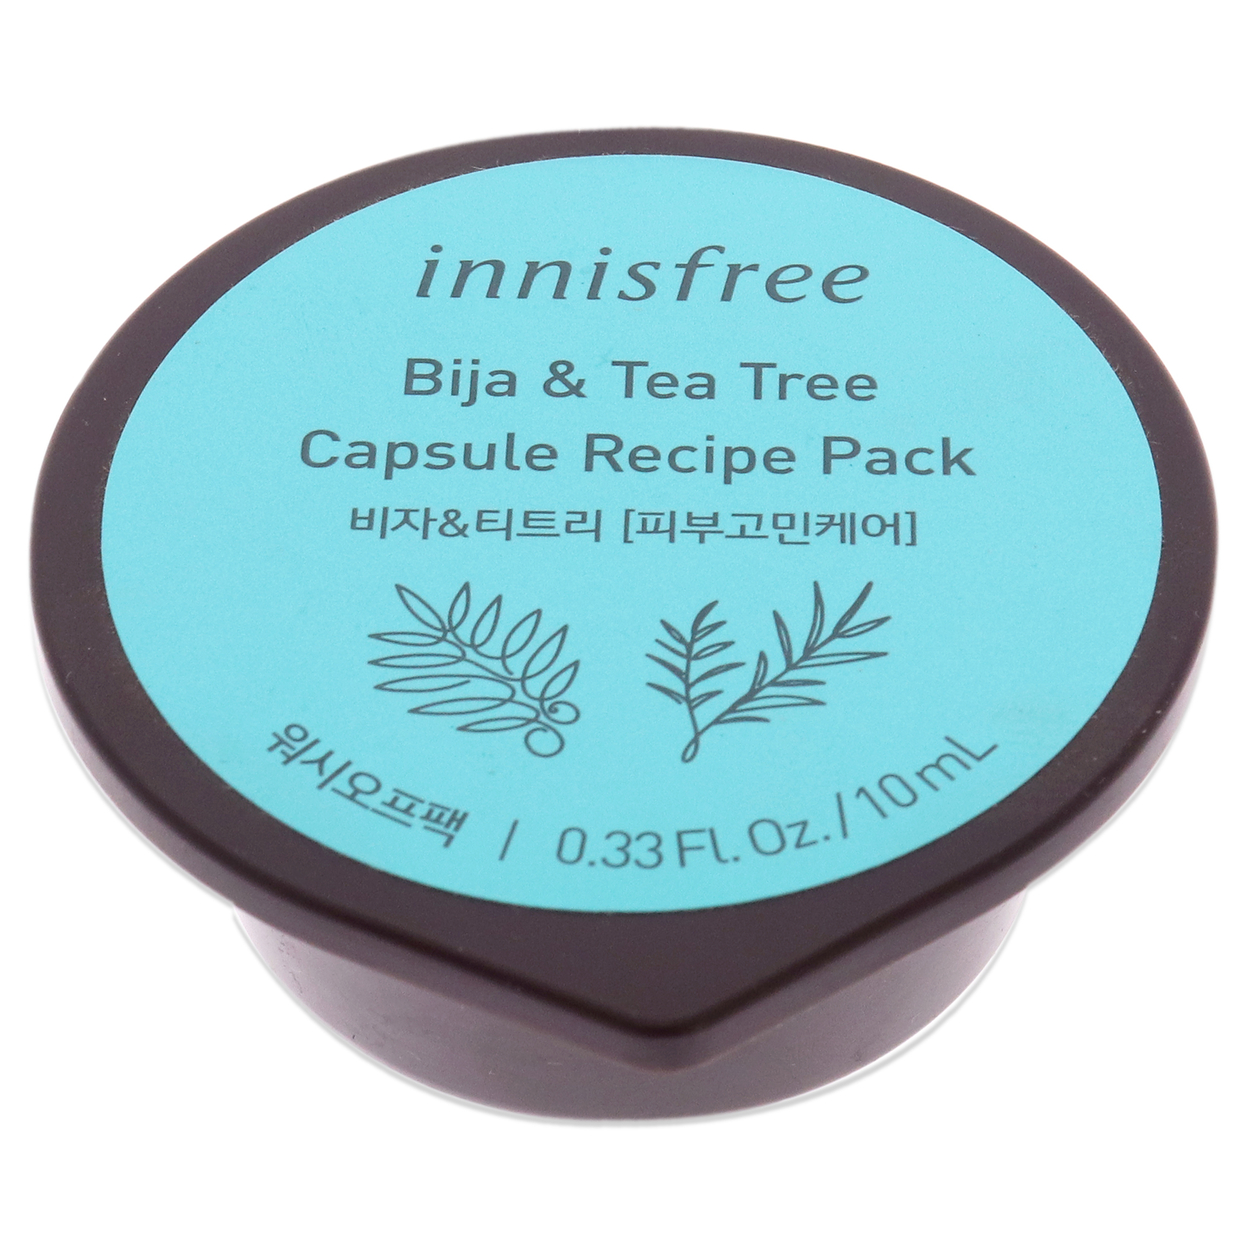 Innisfree Capsule Recipe Pack Mask - Bija And Tea Tree 0.33 Oz